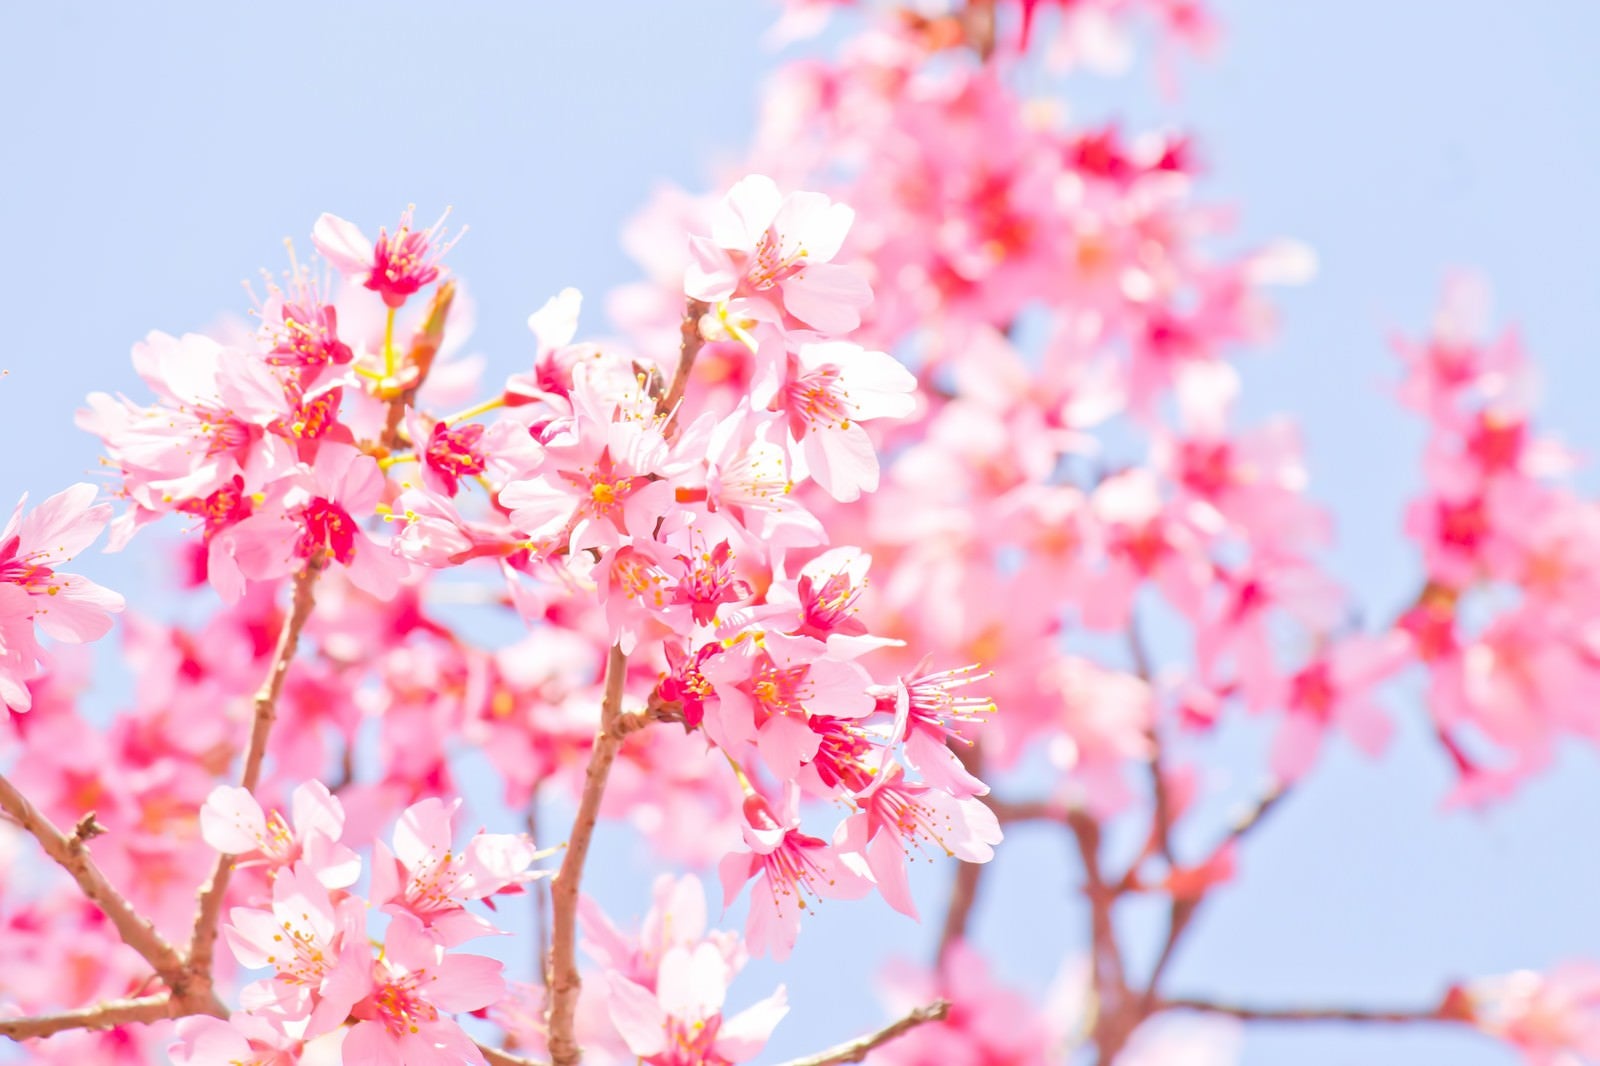 「暖かな日差しと桜」の写真